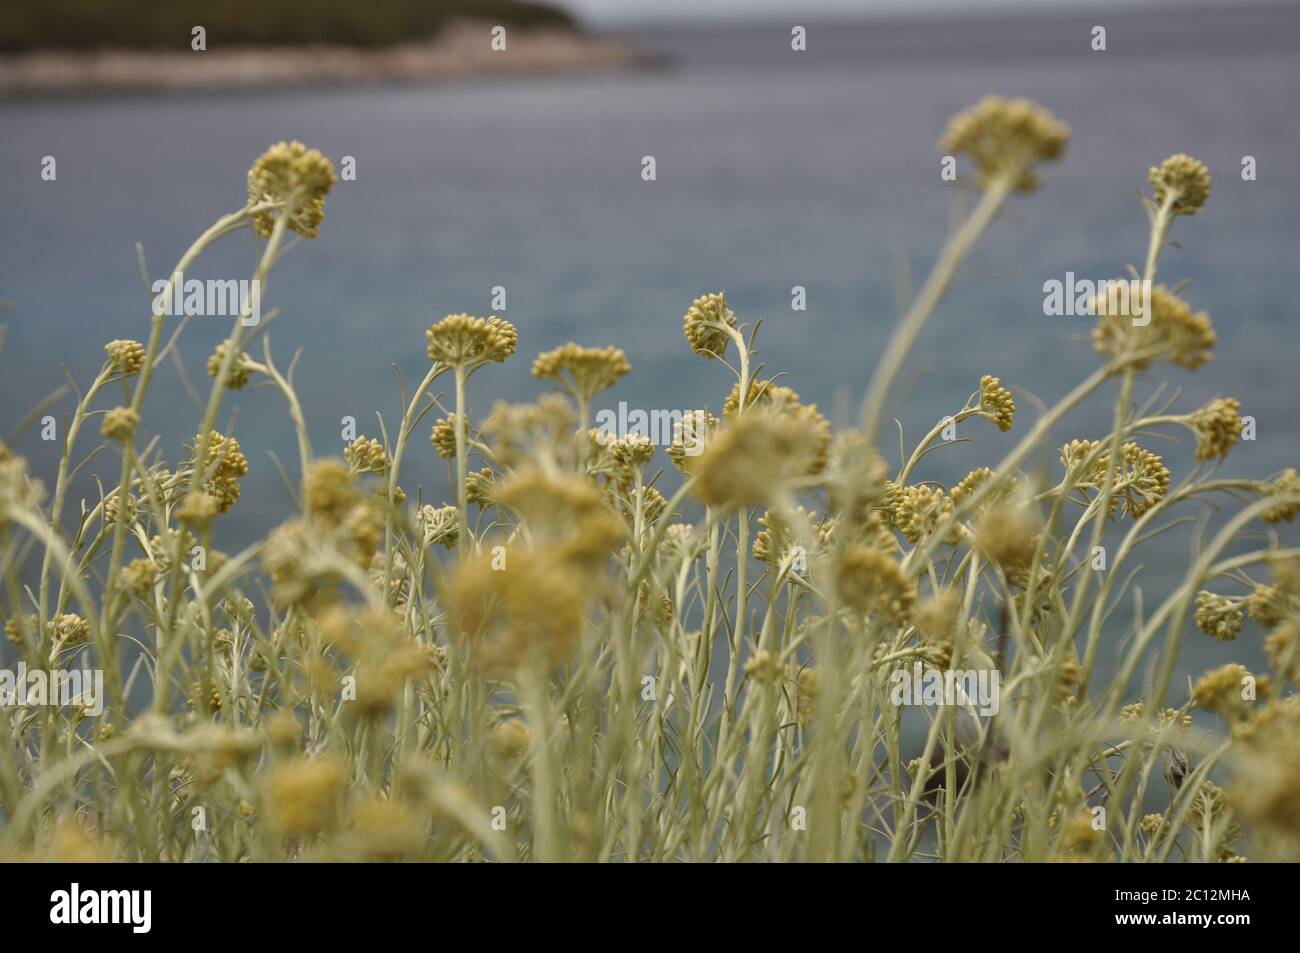 Immortelle mediterraneo, stoechas elichrysum, fiore giallo della costa sull'isola croata di Lussino. Immortelle, pianta medicinale gialla Foto Stock